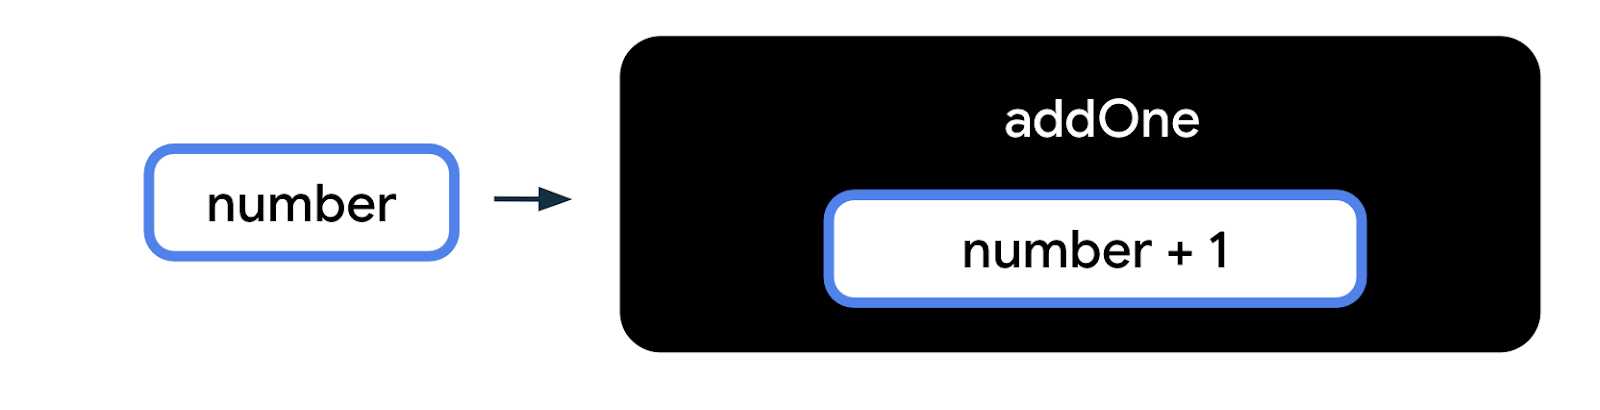 Sơ đồ này biểu thị hàm dưới dạng một hộp màu đen có nhãn &quot;addOne&quot; (thêmMột) trên đó, đó là tên hàm. Trong hộp function (hàm) là một hộp nhỏ hơn, đại diện cho phần thân hàm. Bên trong hộp body (phần thân) của hàm, có văn bản &quot;number + 1&quot; (số+1). Bên ngoài hộp màu đen của hàm, còn có một hộp có nhãn &quot;number&quot; (số) với mũi tên chỉ vào hộp màu đen của hàm. Số này là một dữ liệu đầu vào của hàm. 